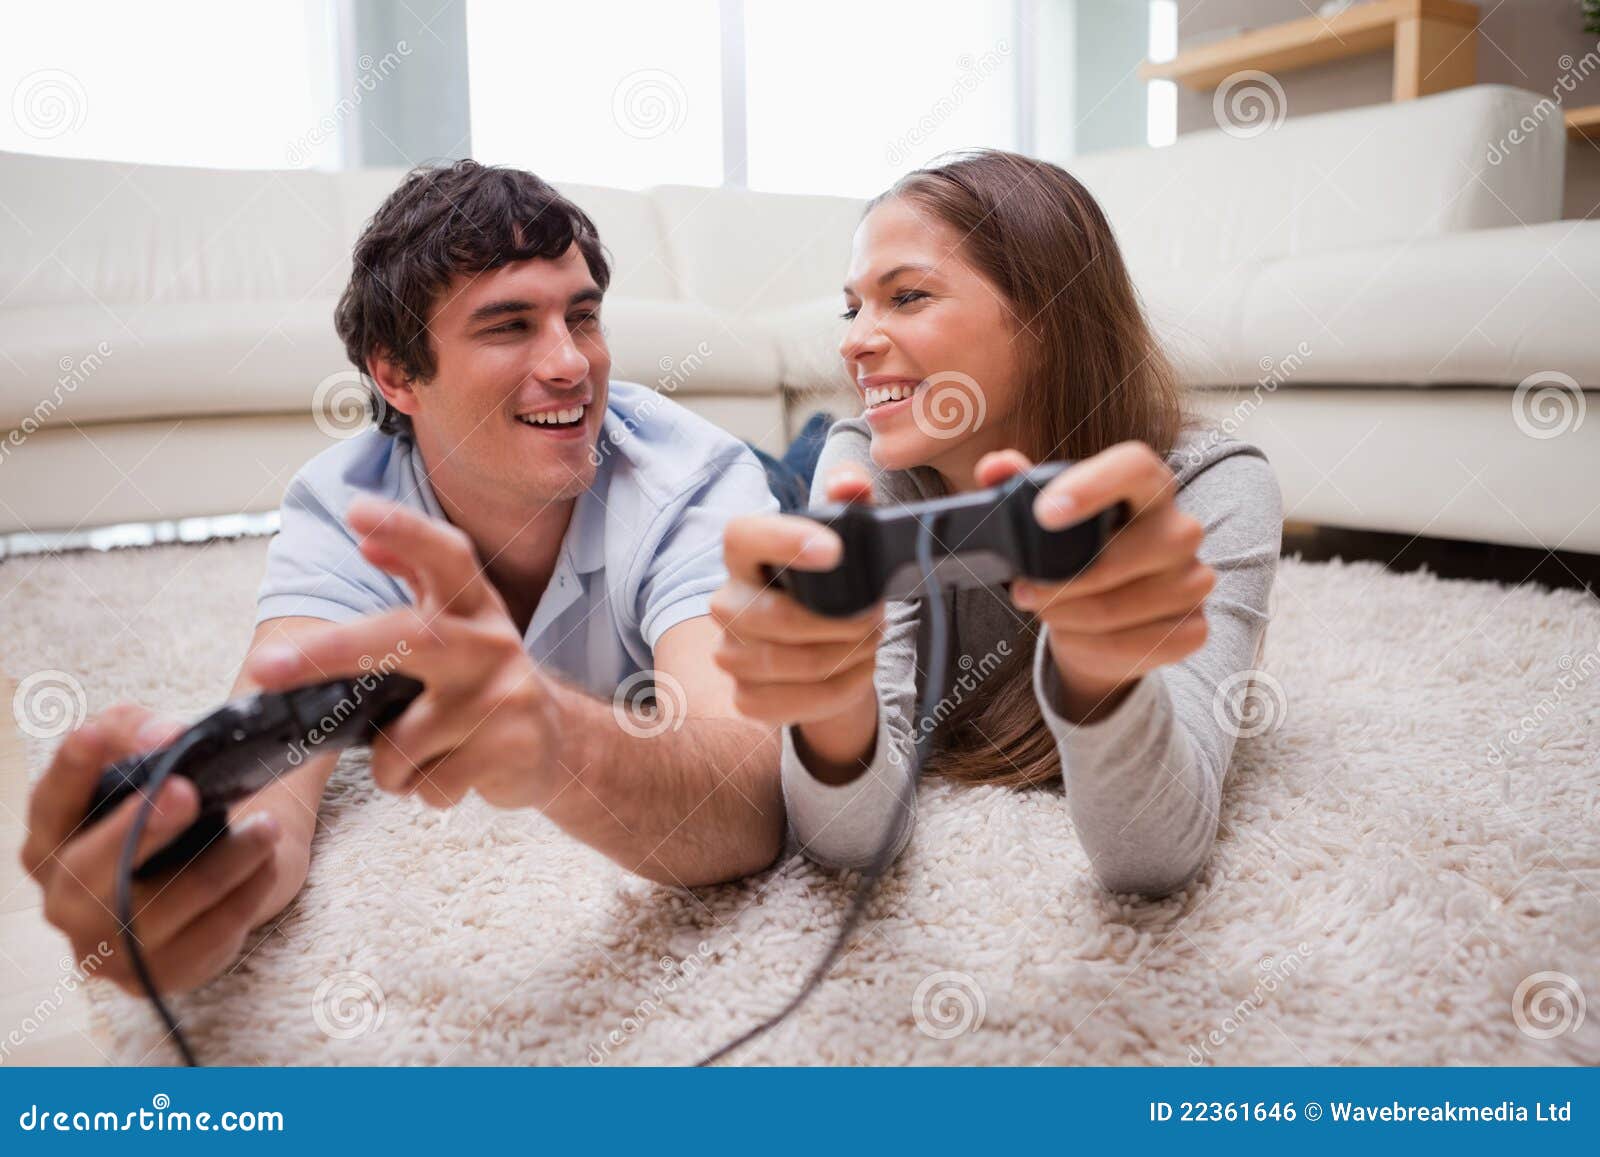 Телефон жены игра. Пара играет в Видеоигры. Игровые пары. Влюбленная пара играет в Видеоигры. Пара играет в приставку.